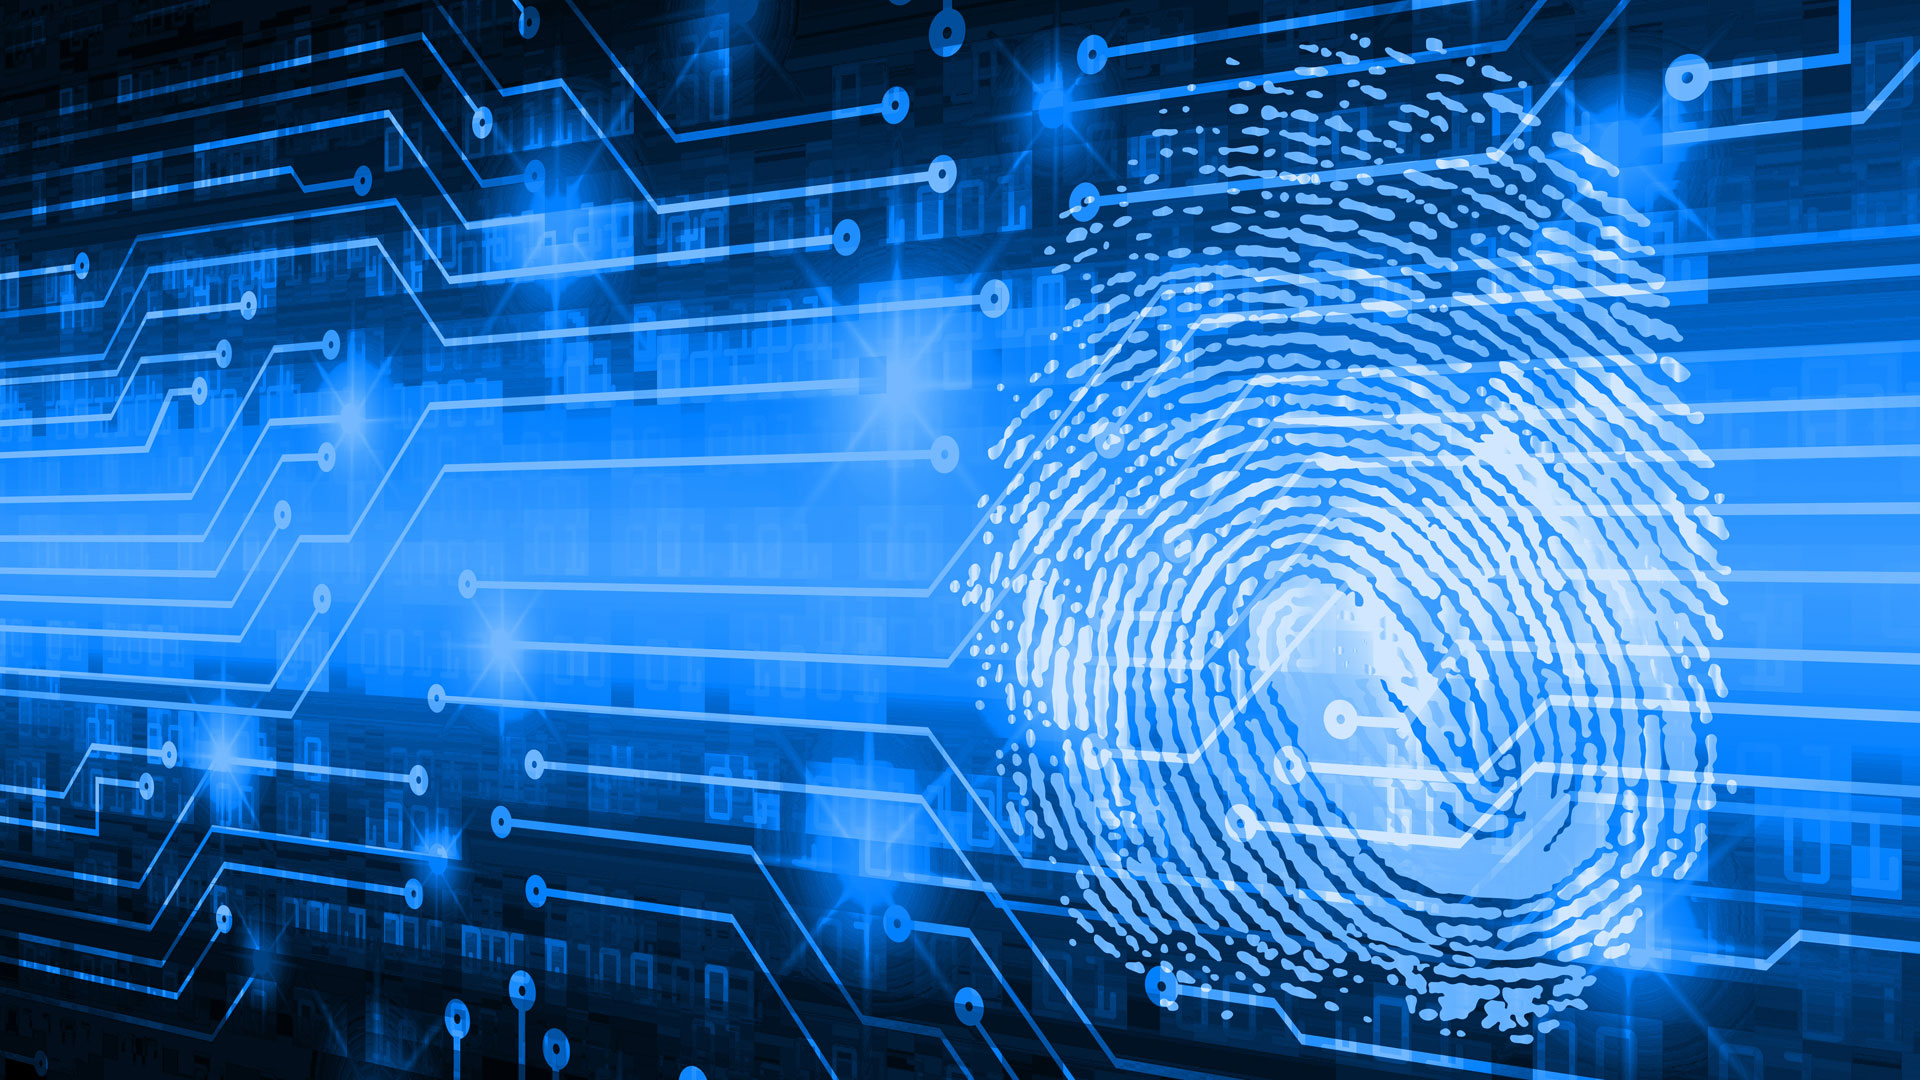 Digital fingerprint in blue